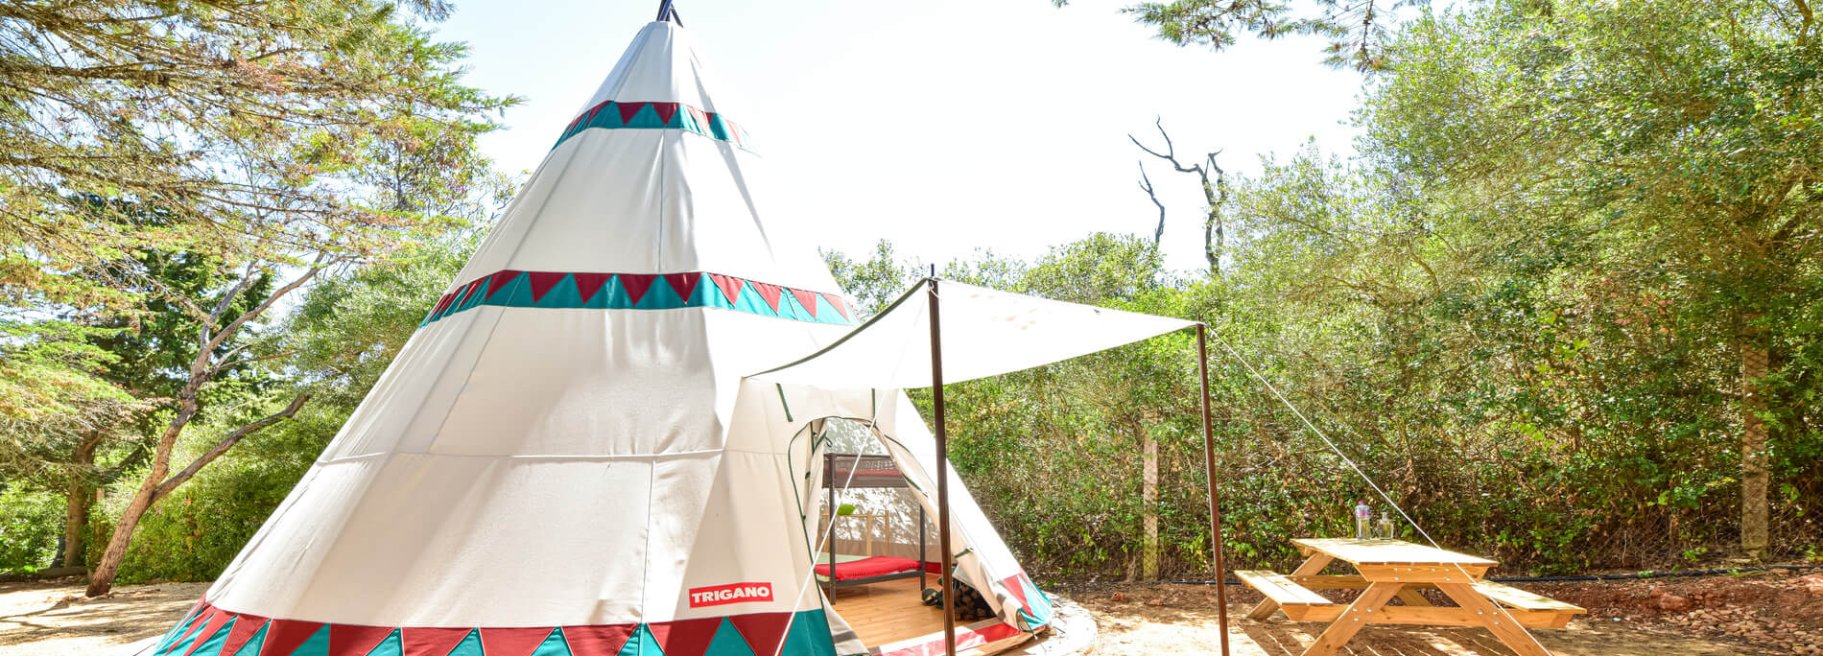 Tipi Tents